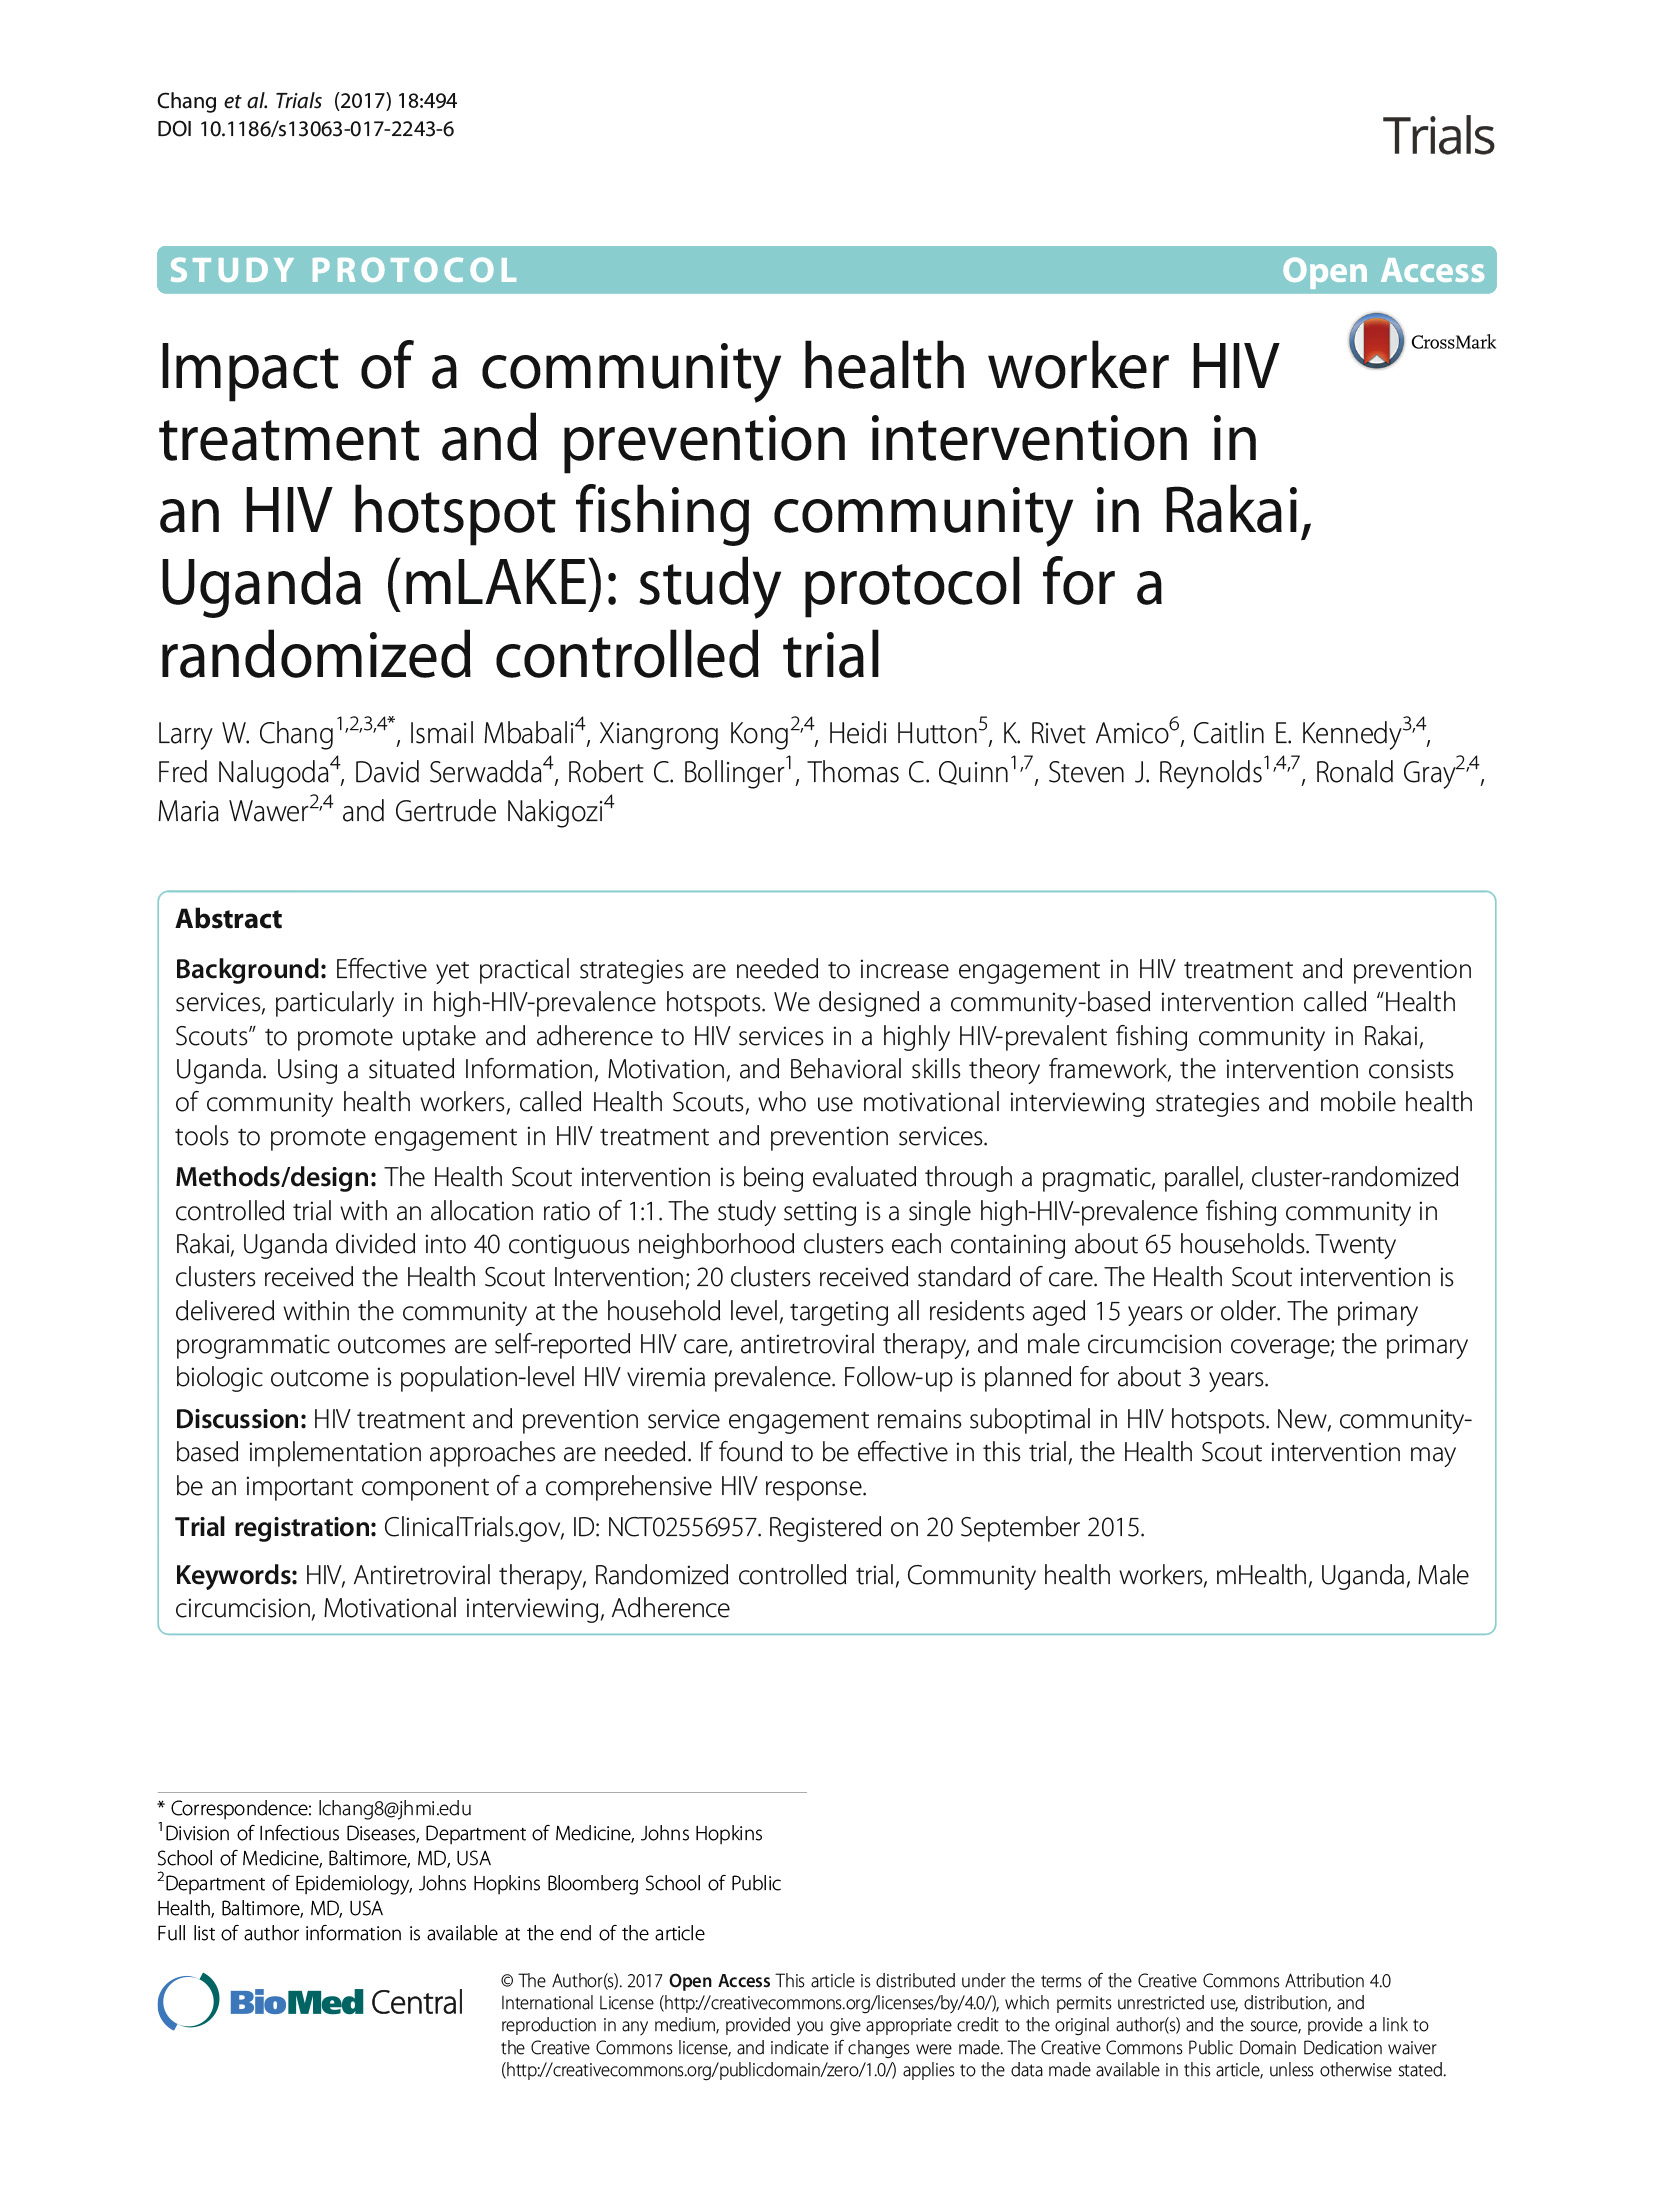 Impacto de una intervención de tratamiento y prevención del VIH por parte de un trabajador sanitario comunitario en una comunidad pesquera de Rakai, Uganda, con un alto índice de VIH (mLAKE): Protocolo de estudio para un ensayo controlado aleatorizado - portada